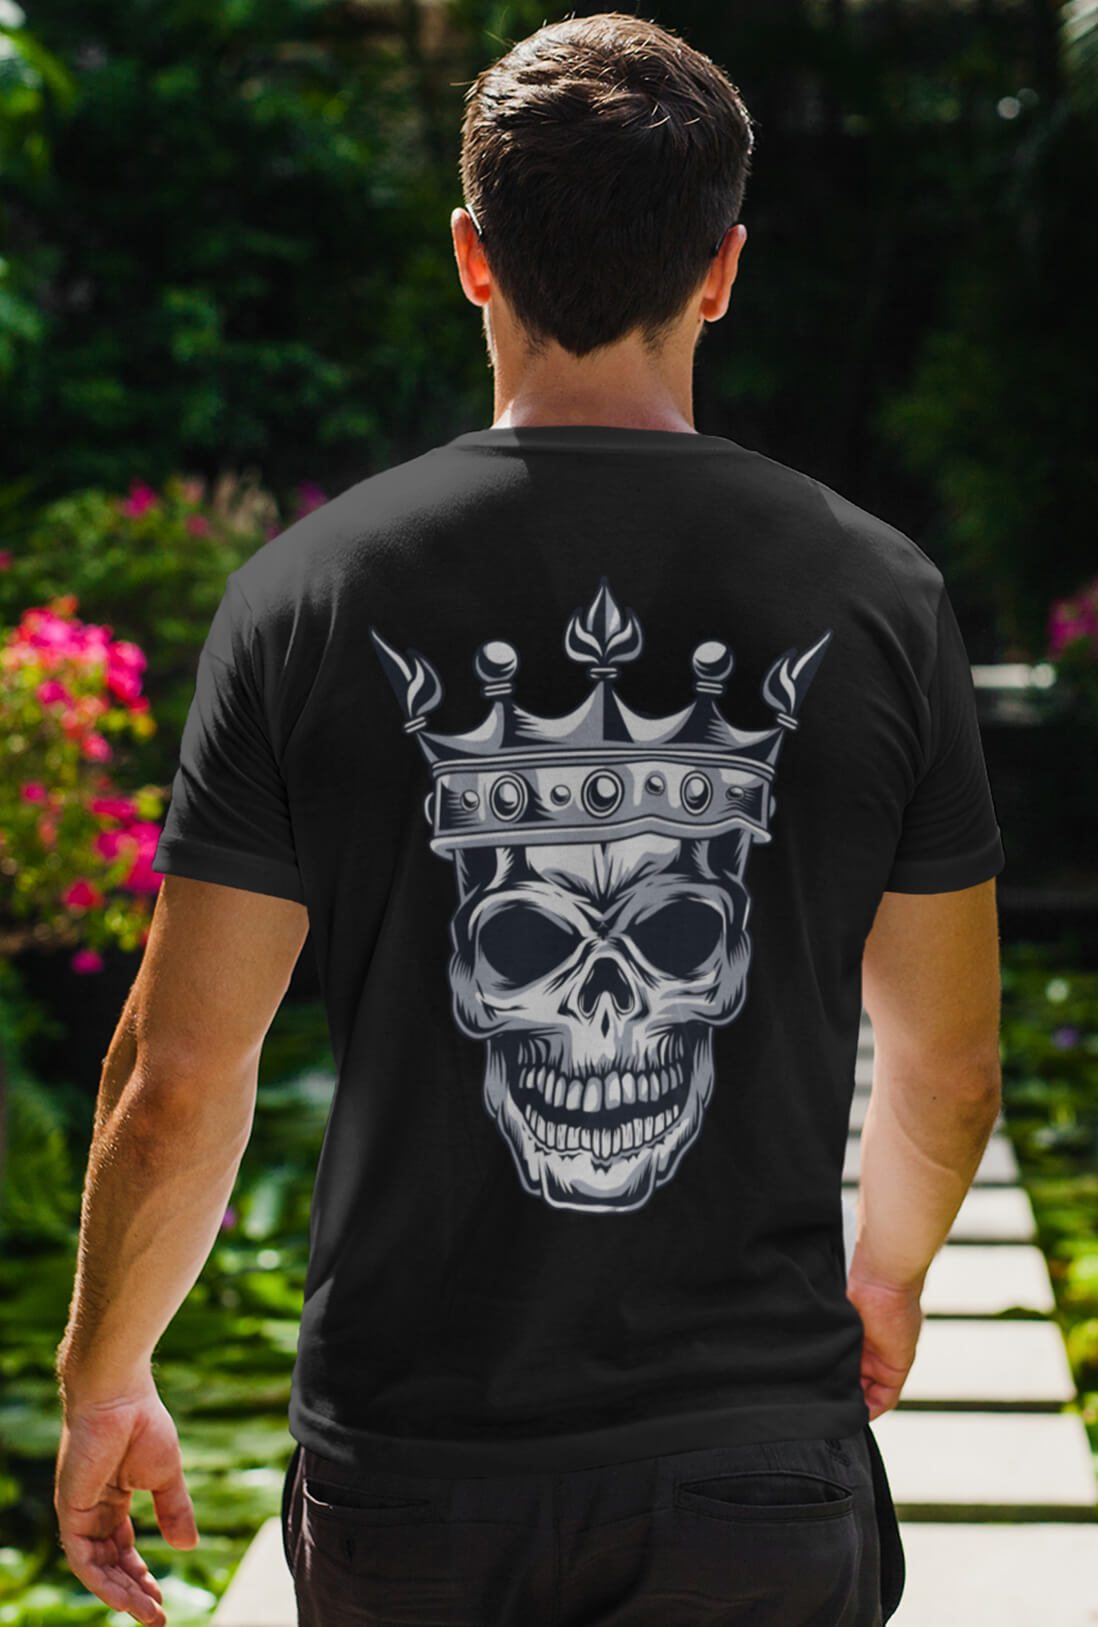 Skull Men's Back Printed T-Shirt